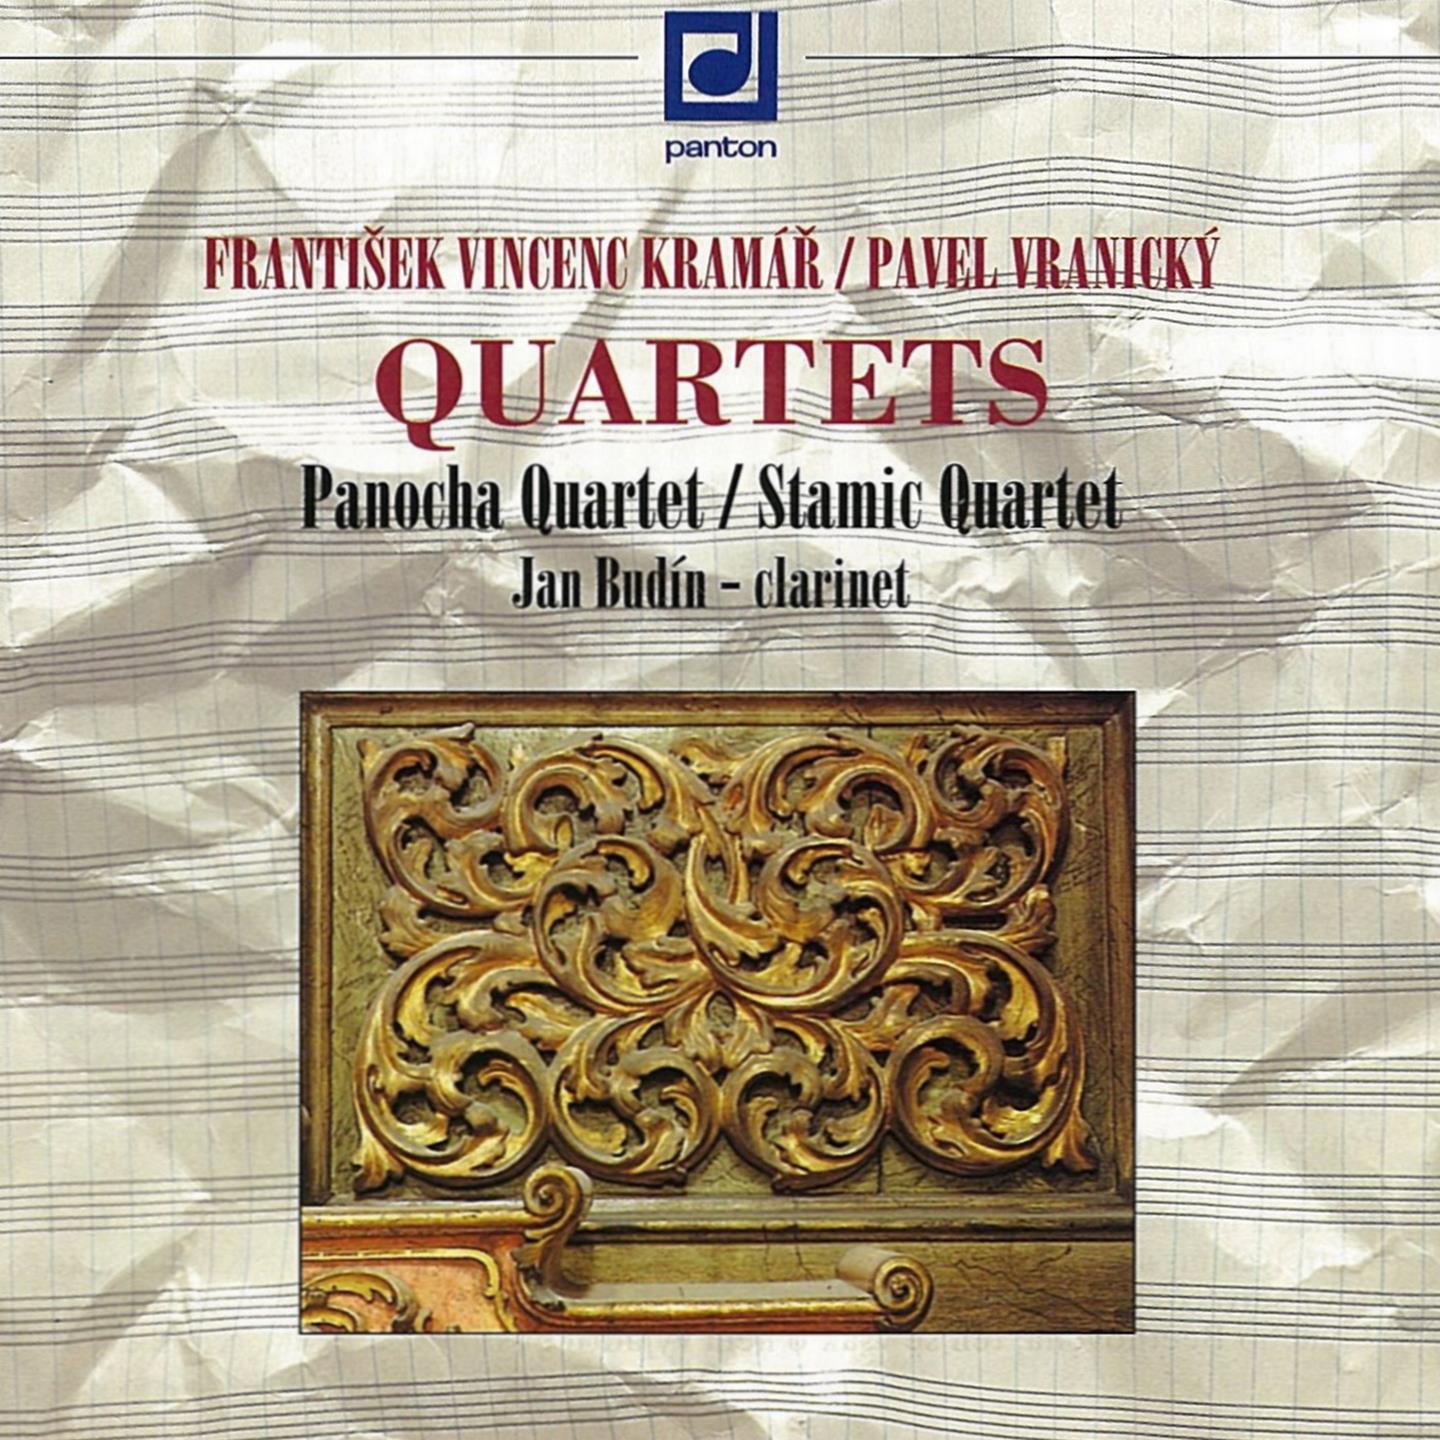 Clarinet Quartets, Op. 21, No. 1 in B-Flat Major, Op. 21: III. Menuetto